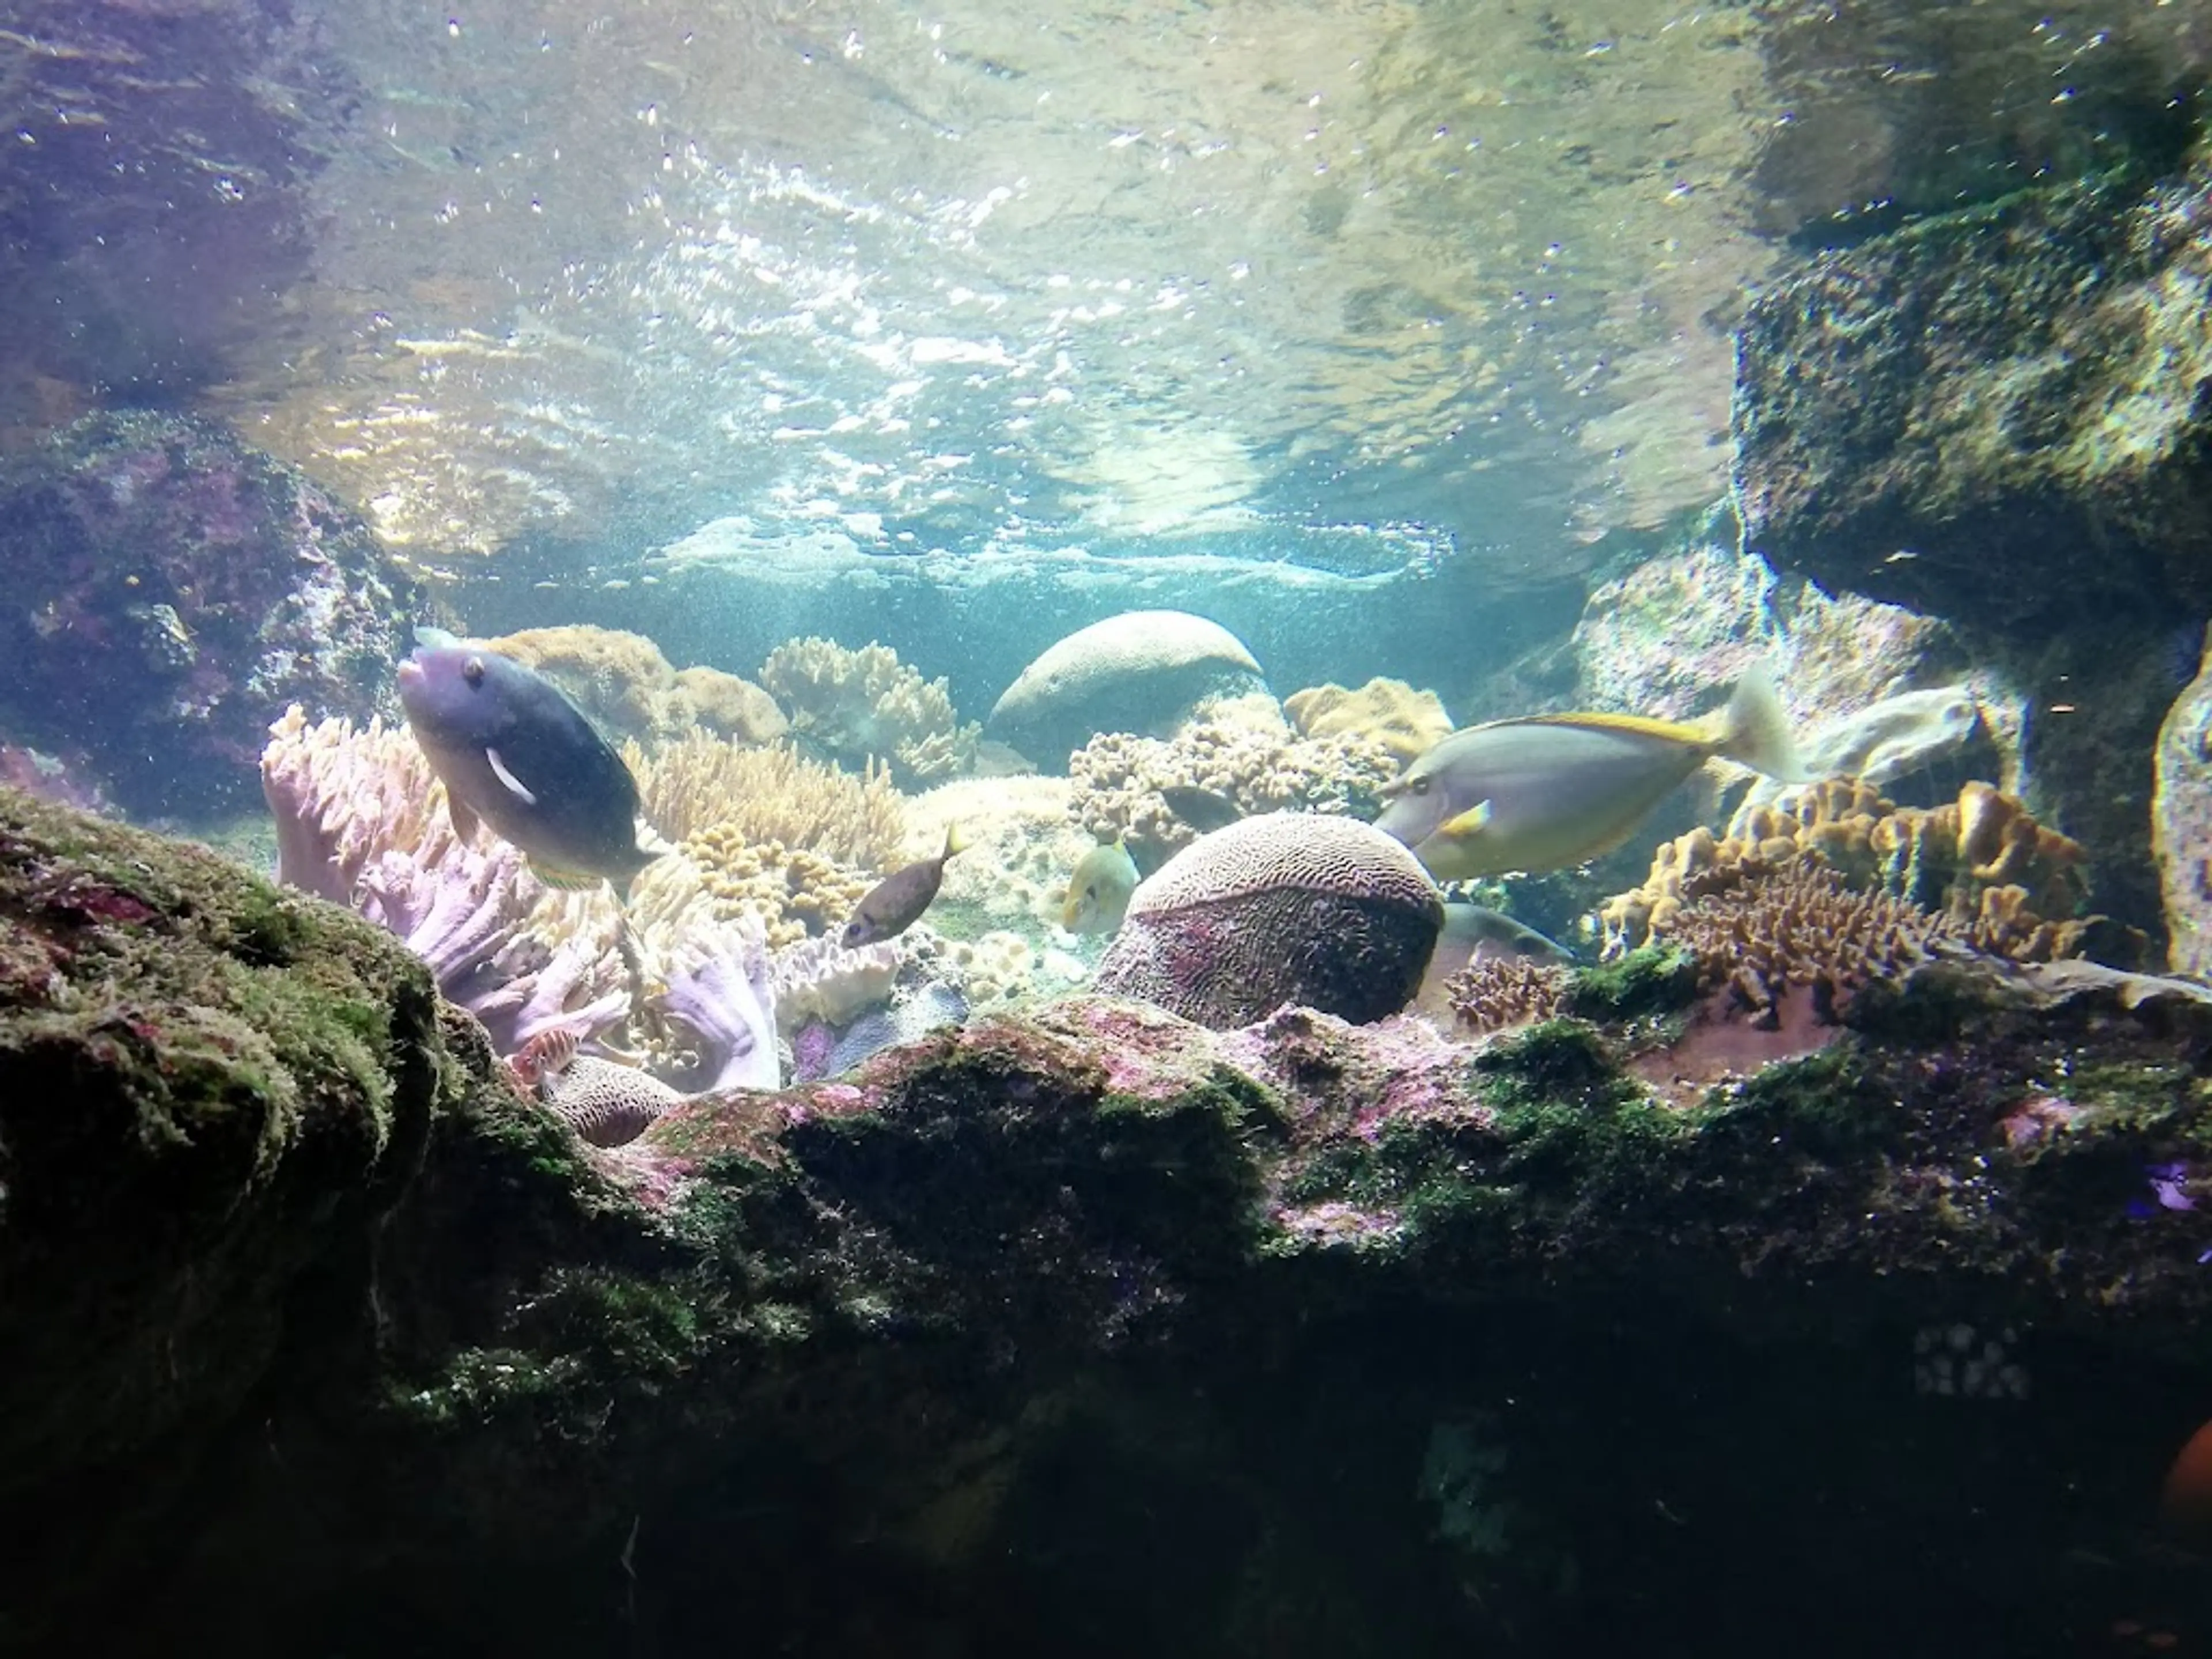 Aquarium of Reunion